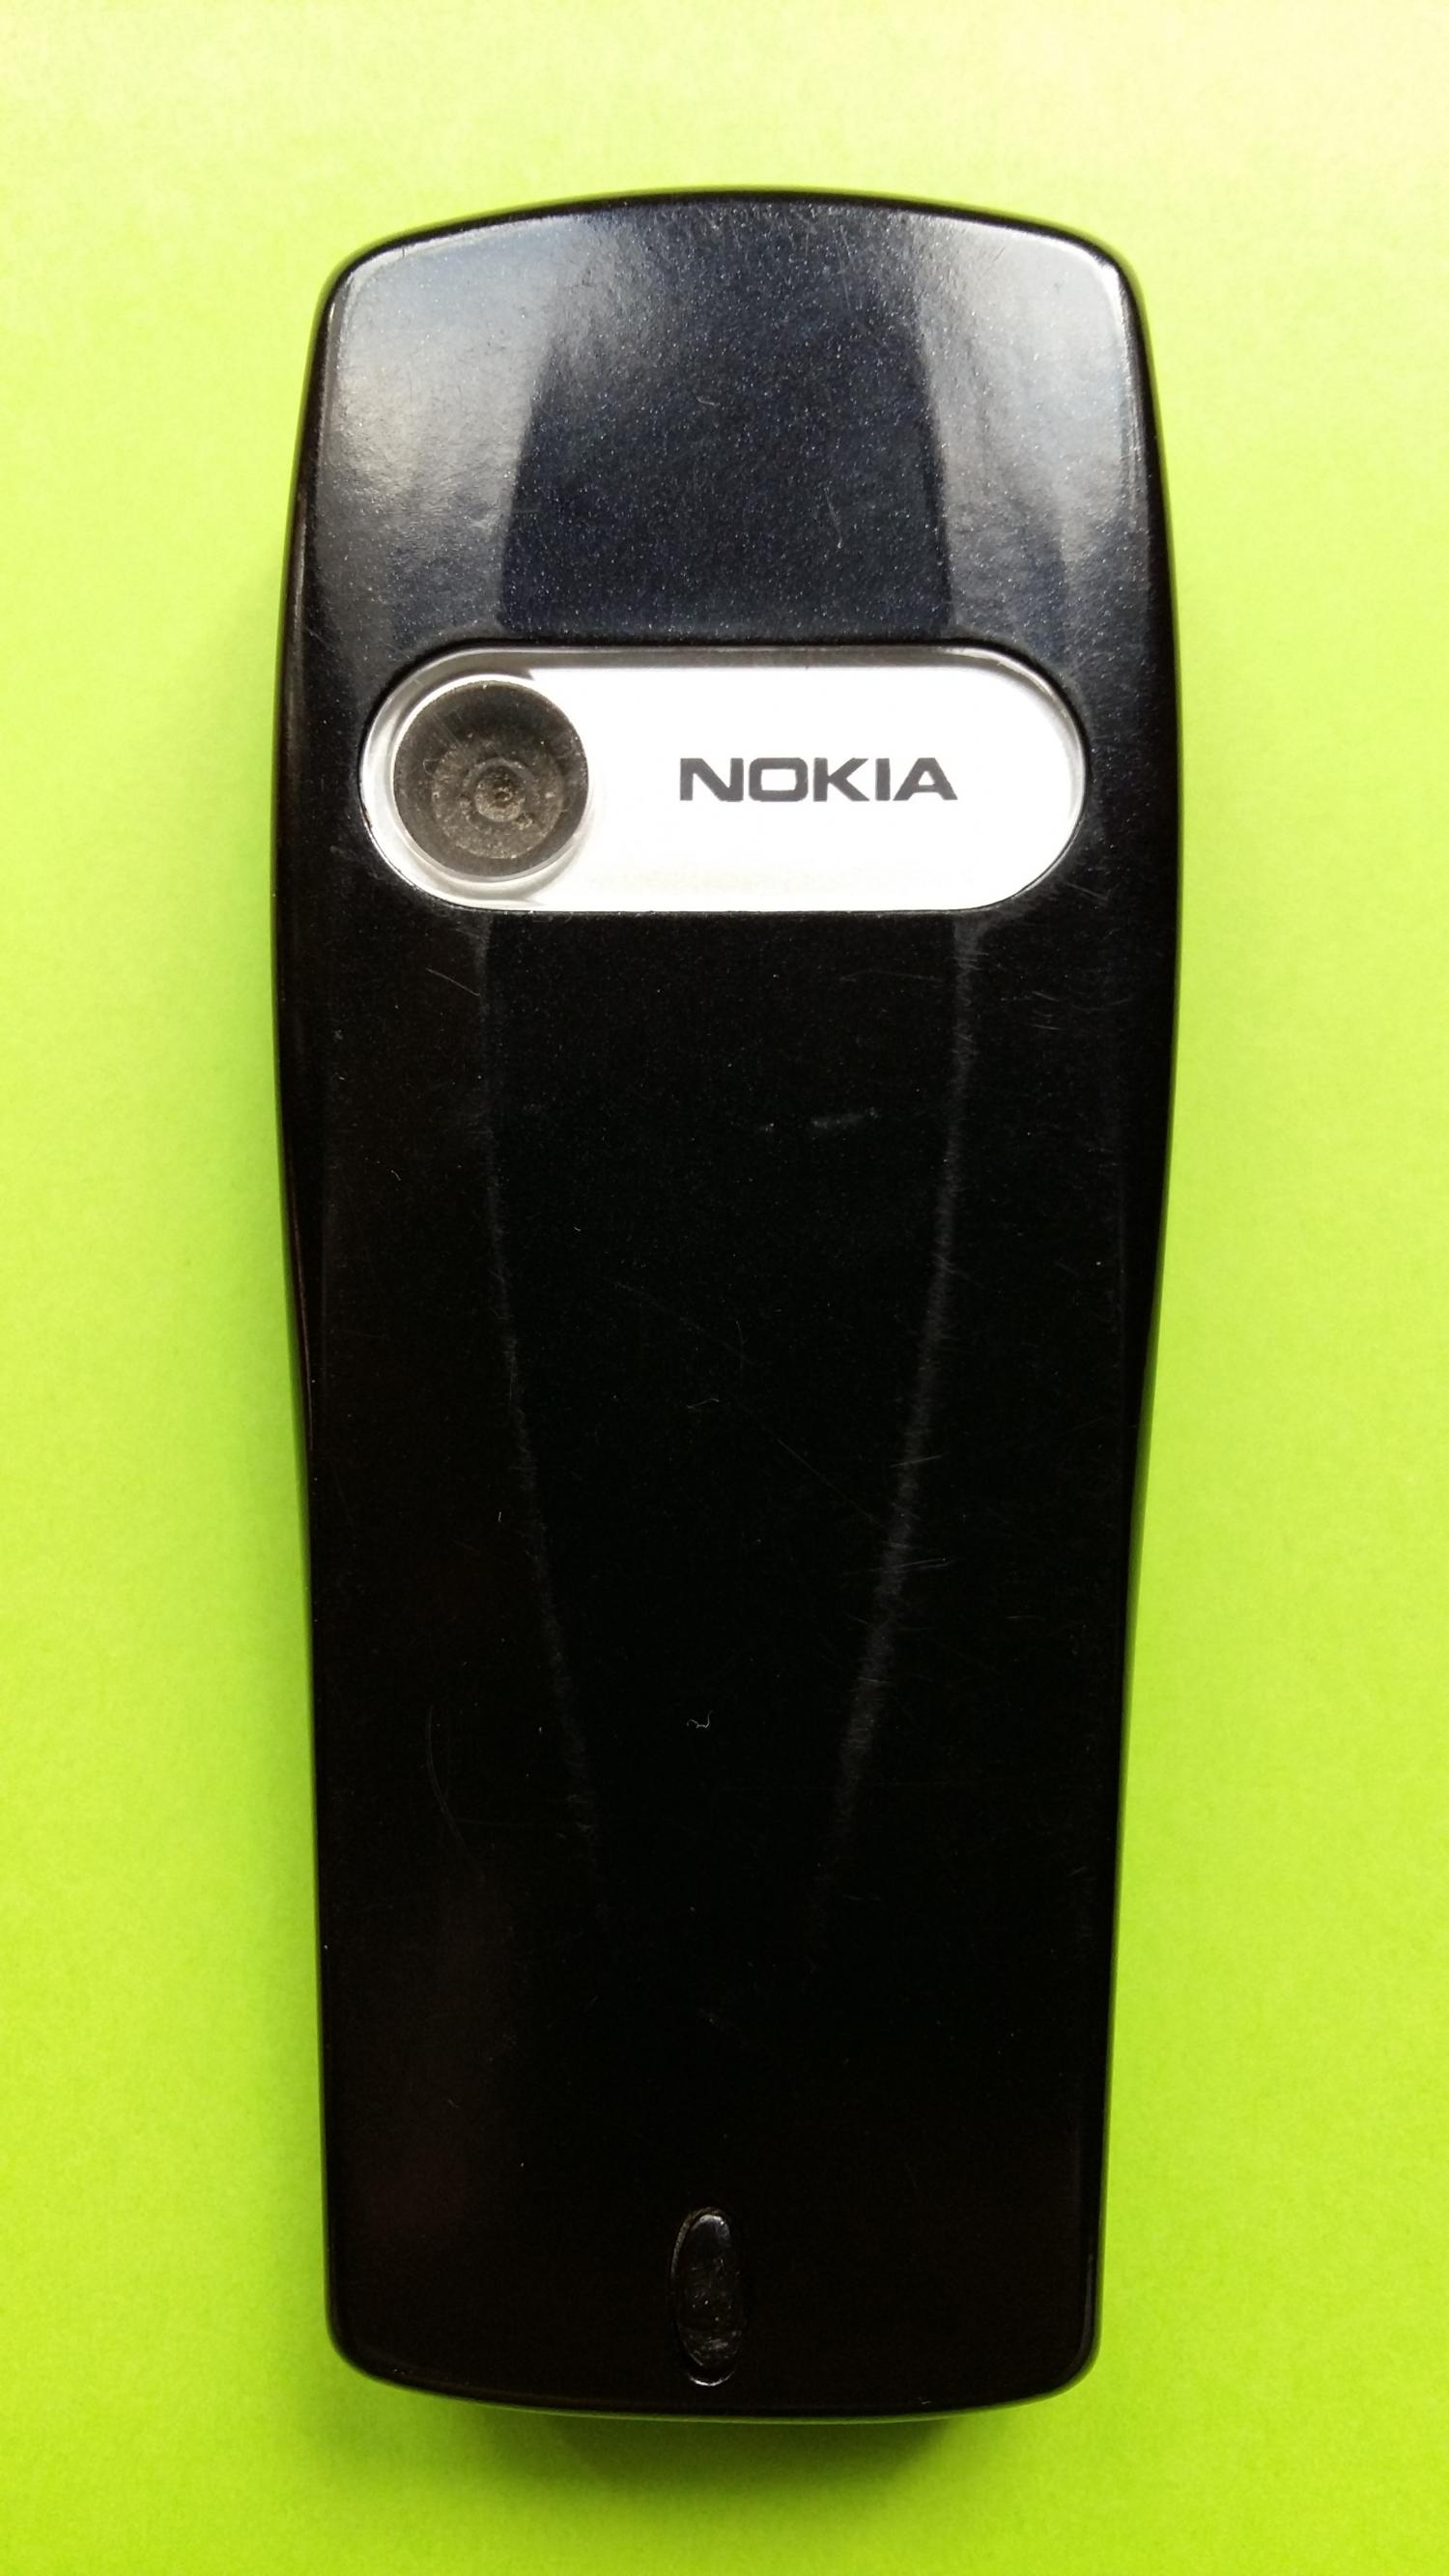 image-7316140-Nokia 6610i (13)2.jpg